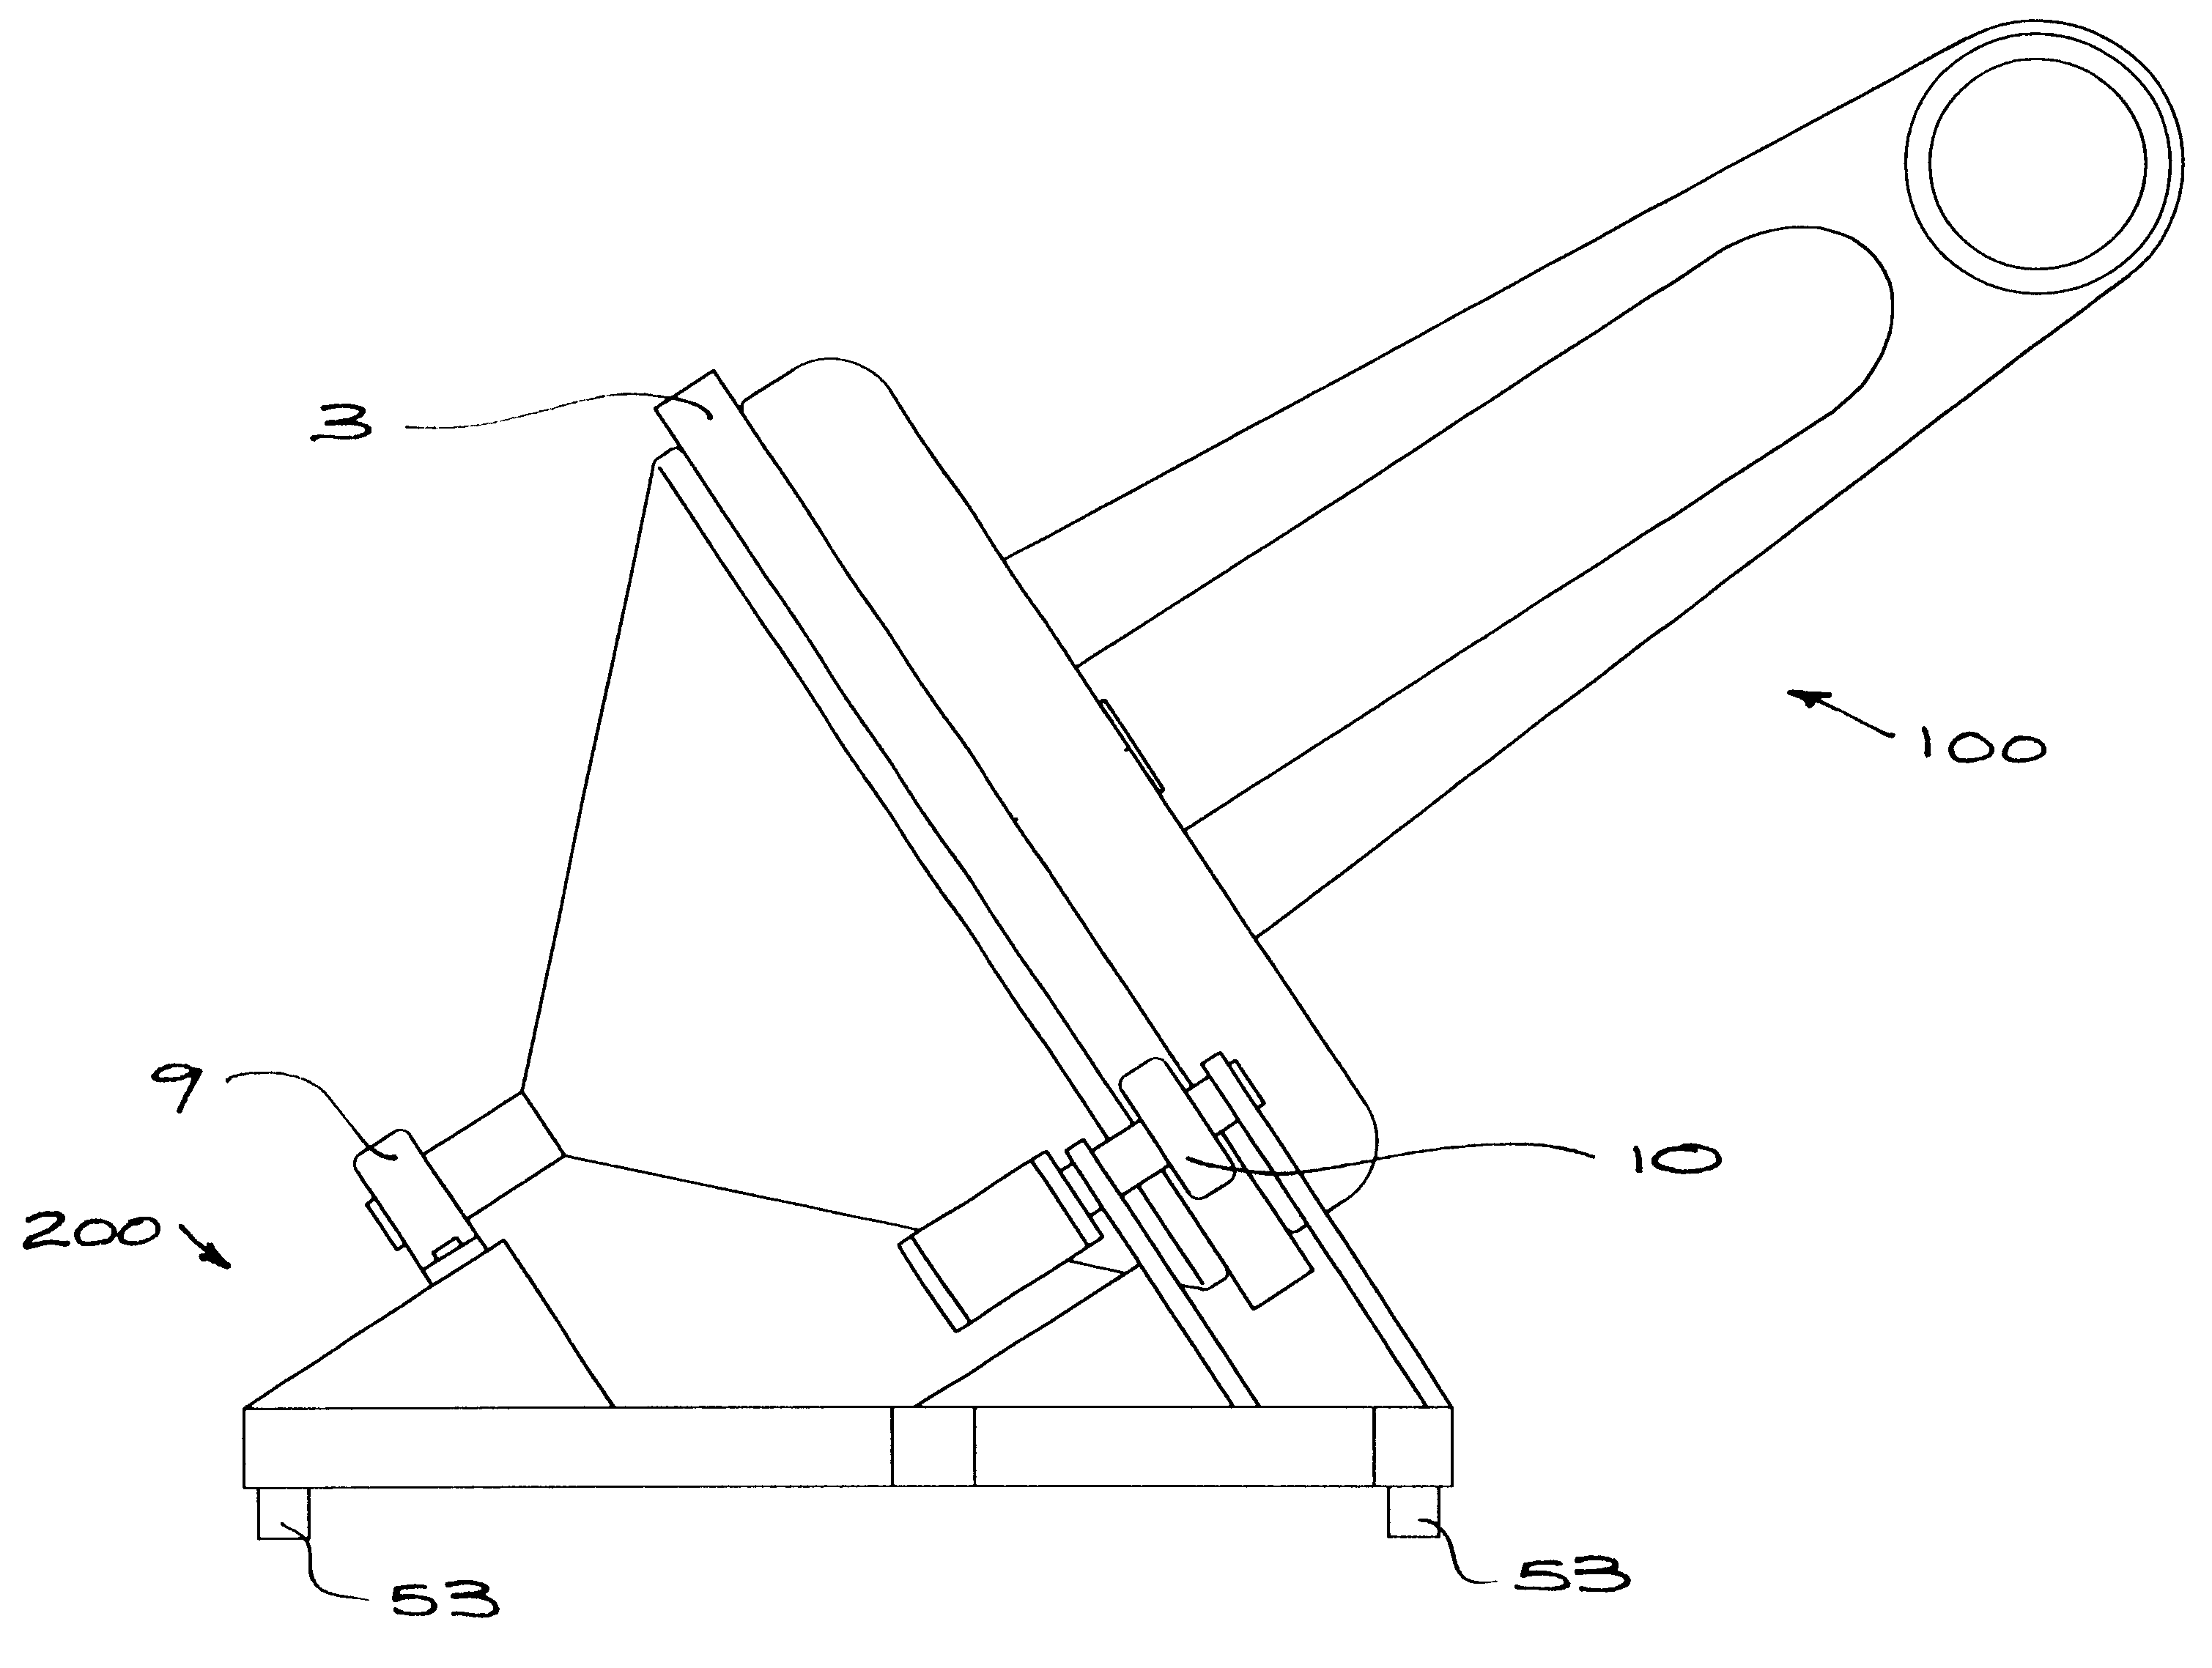 Telescope mount